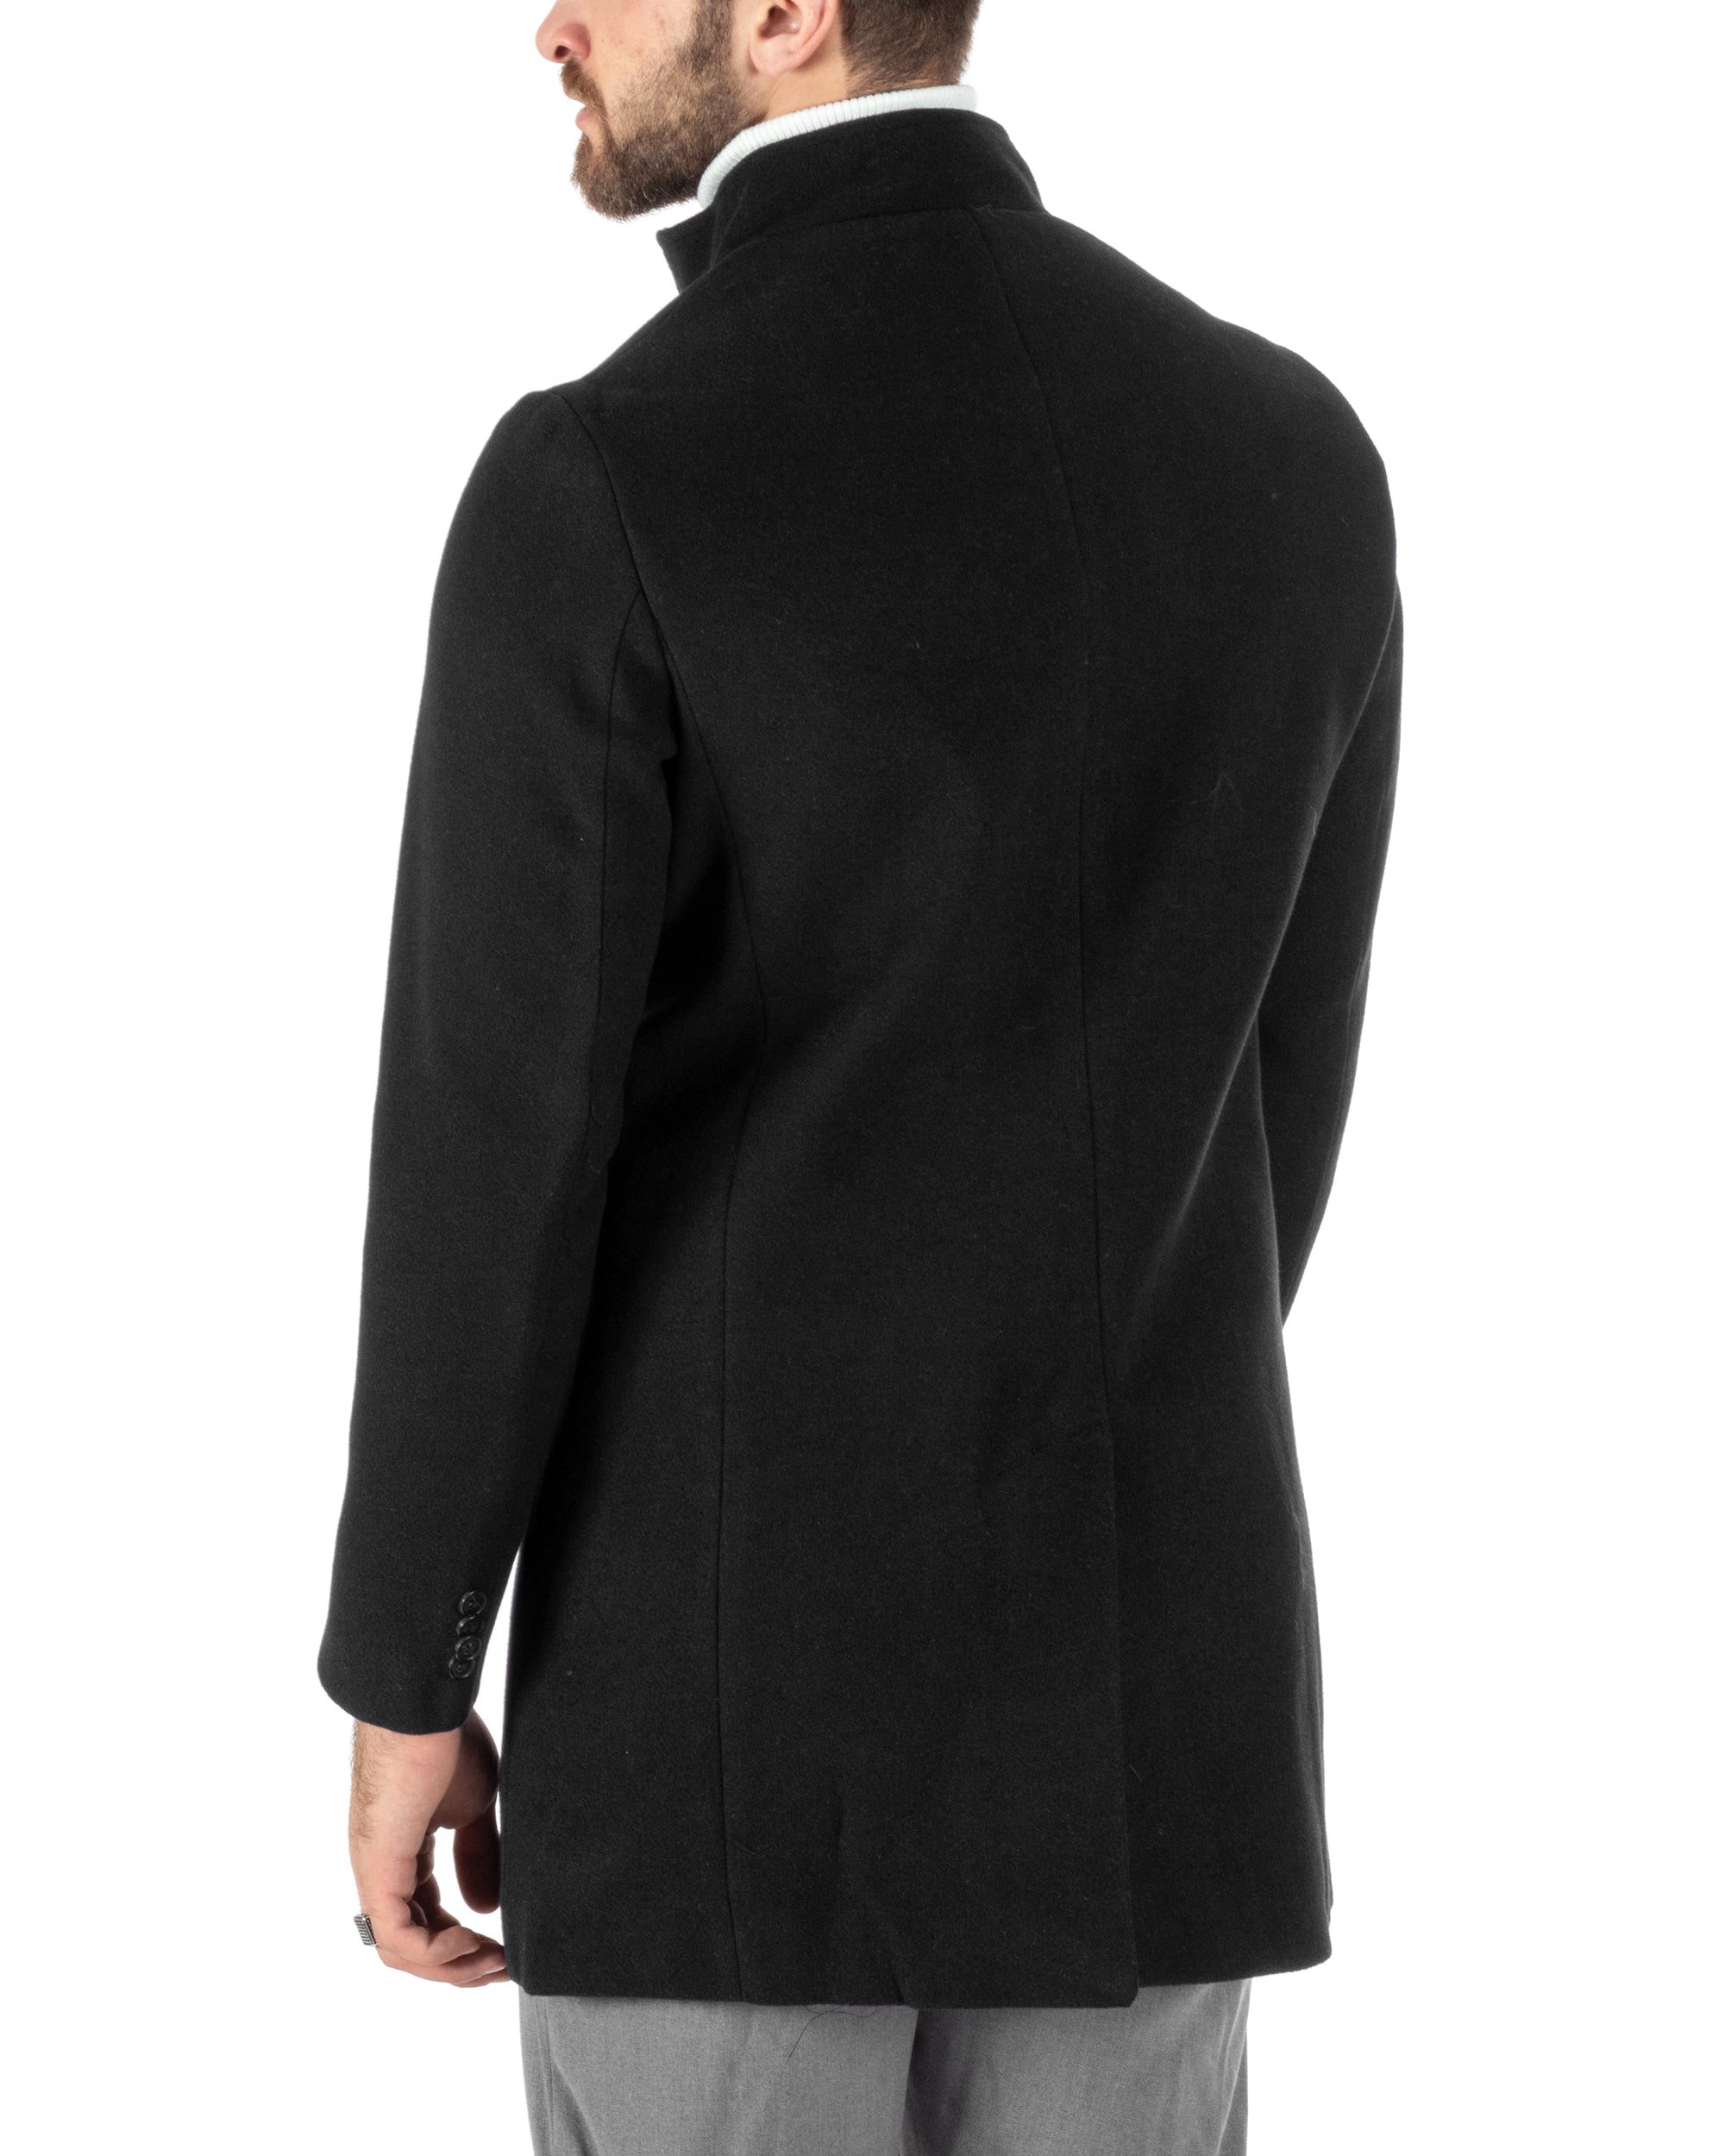 Cappotto Monopetto Uomo Giacca Collo Coreano Giaccone Lungo Nero Baronetto Elegante GIOSAL-CO1016A